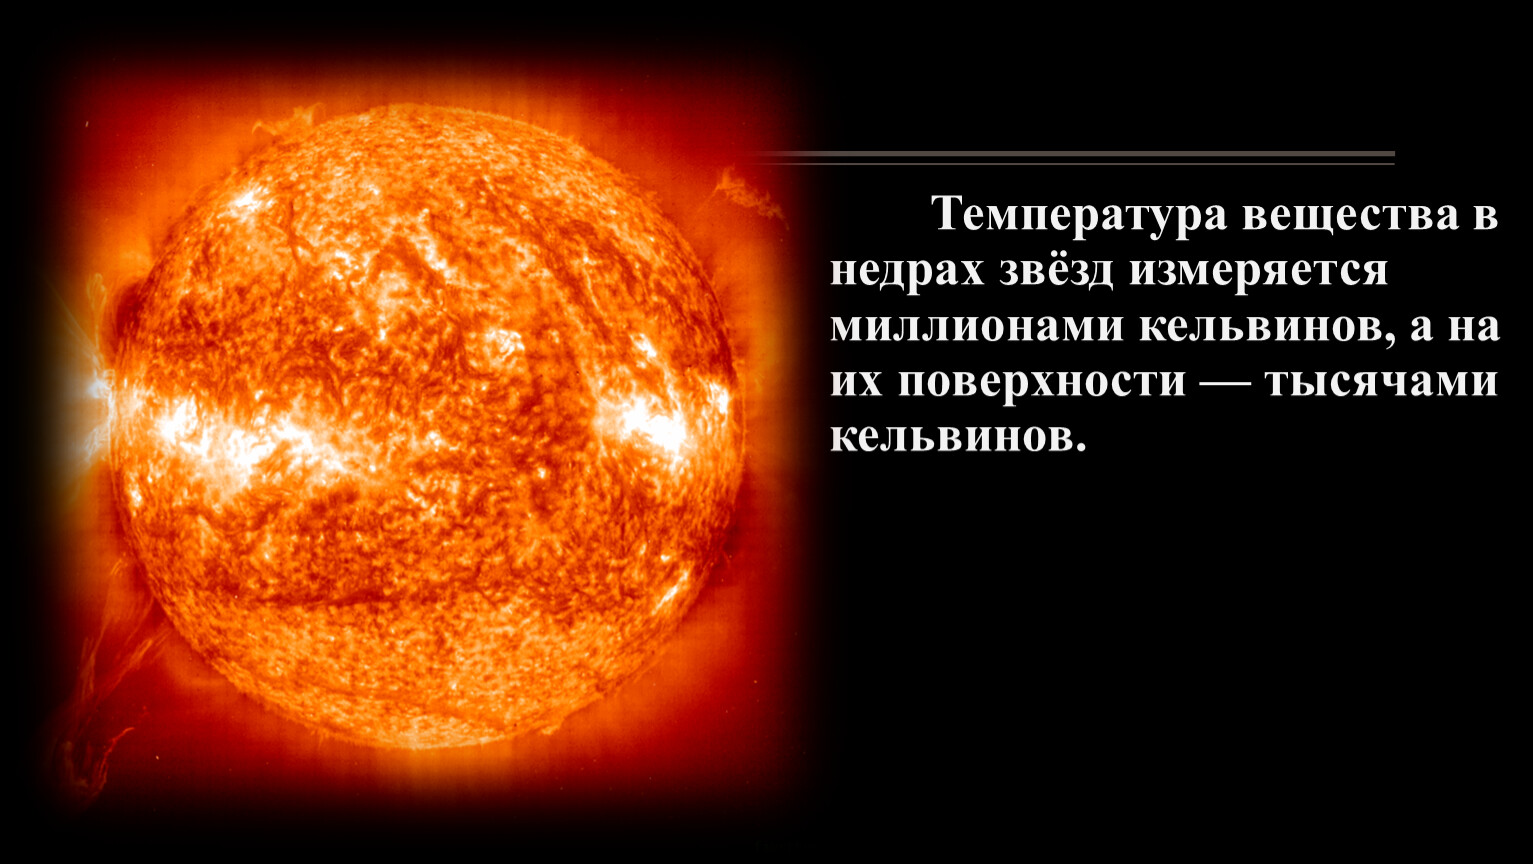 Температура звезд типа солнца